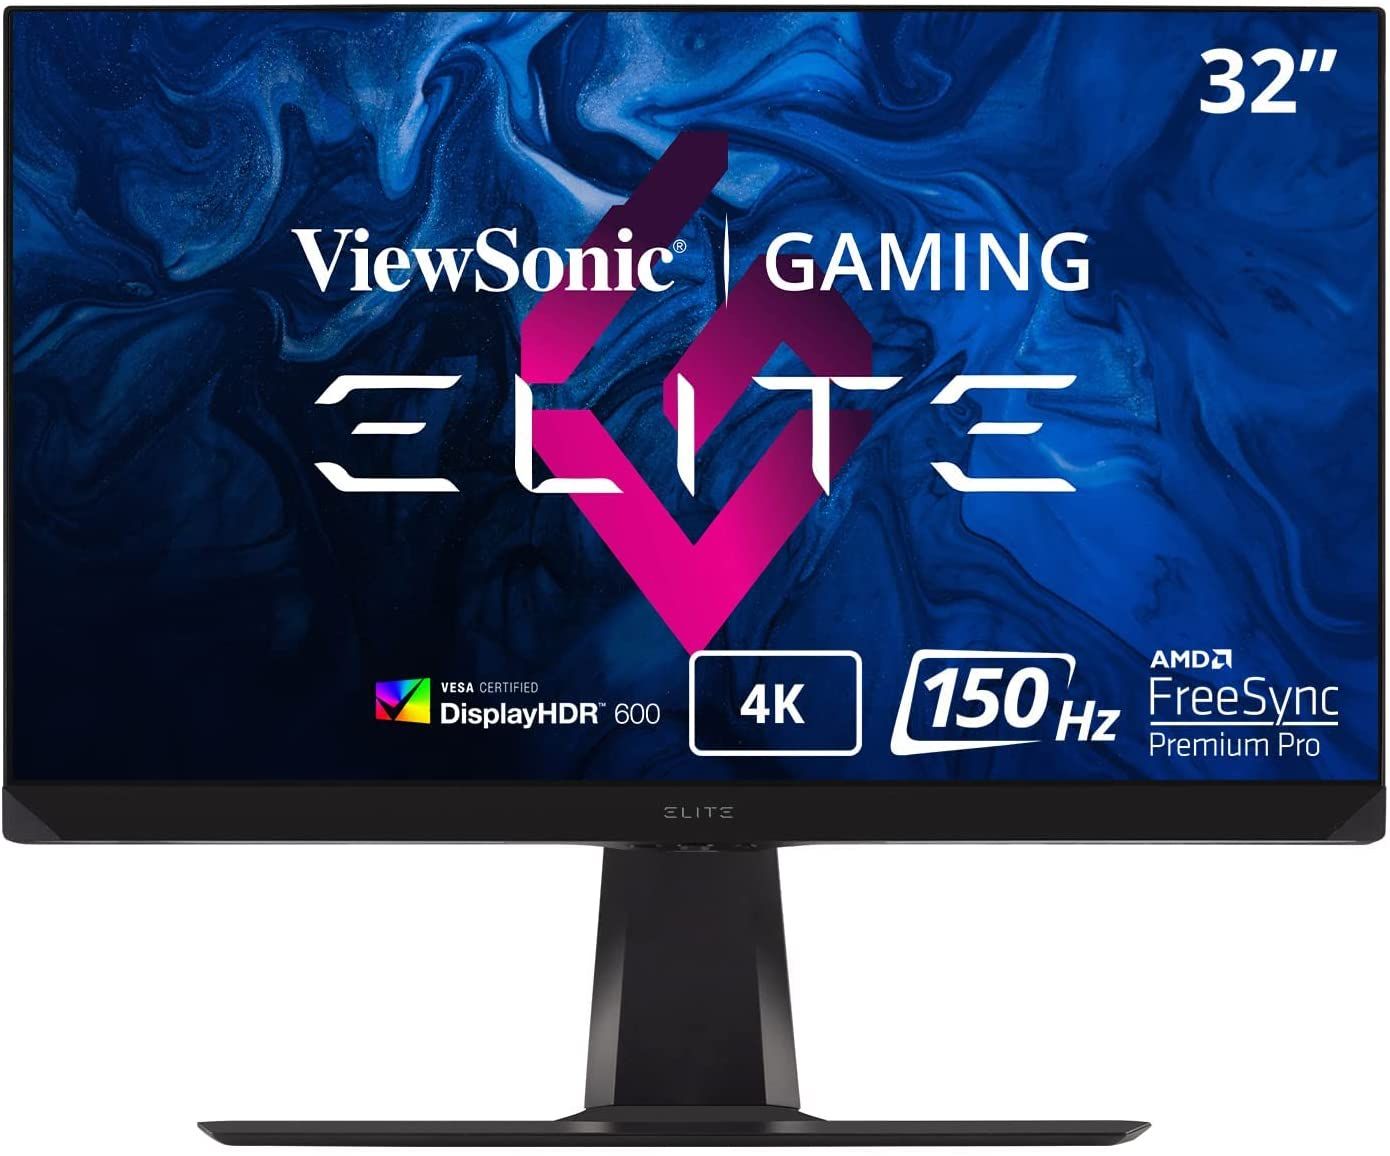 ViewSonic ELITE XG320U 32 Inch 4K UHD